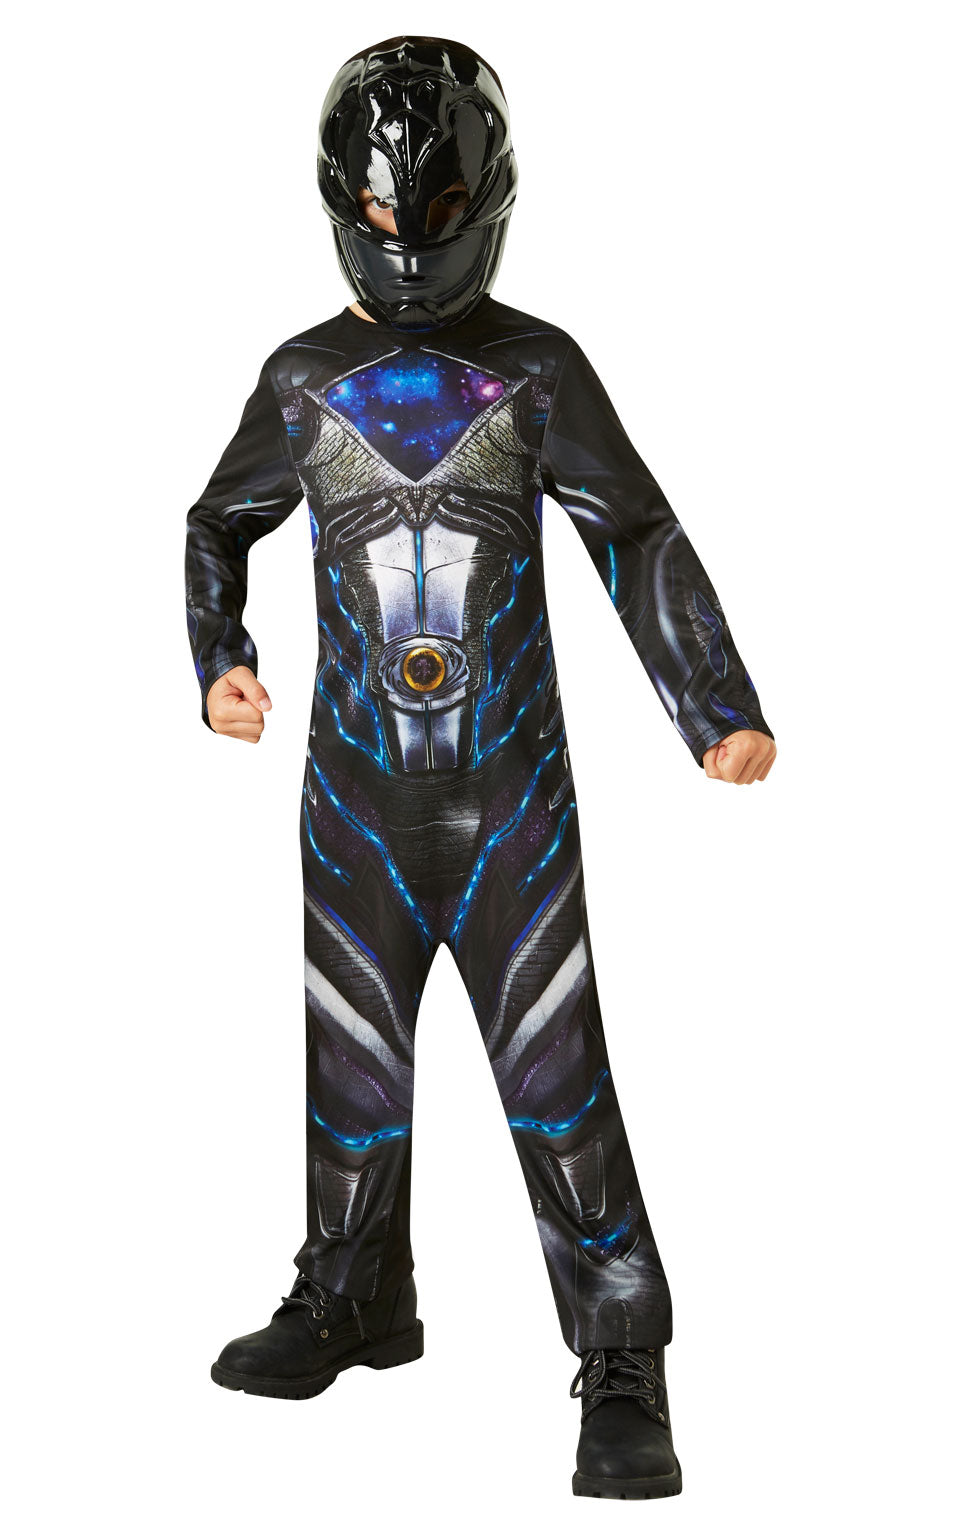 Deluxe Power Rangers Costume Black for kids